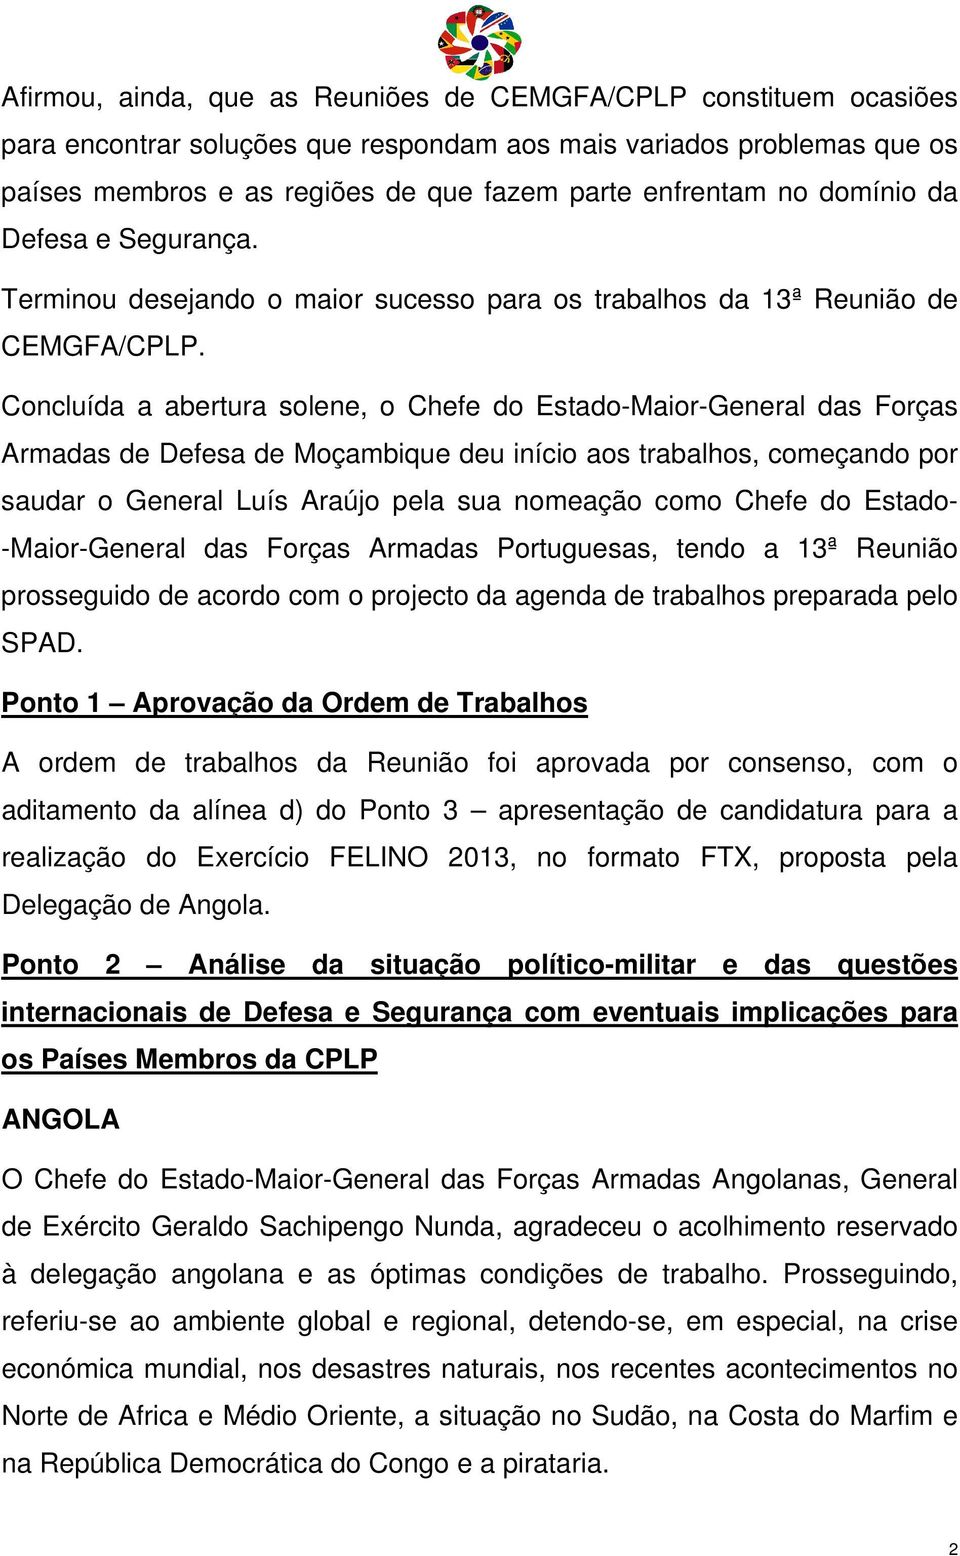 Concluída a abertura solene, o Chefe do Estado-Maior-General das Forças Armadas de Defesa de Moçambique deu início aos trabalhos, começando por saudar o General Luís Araújo pela sua nomeação como